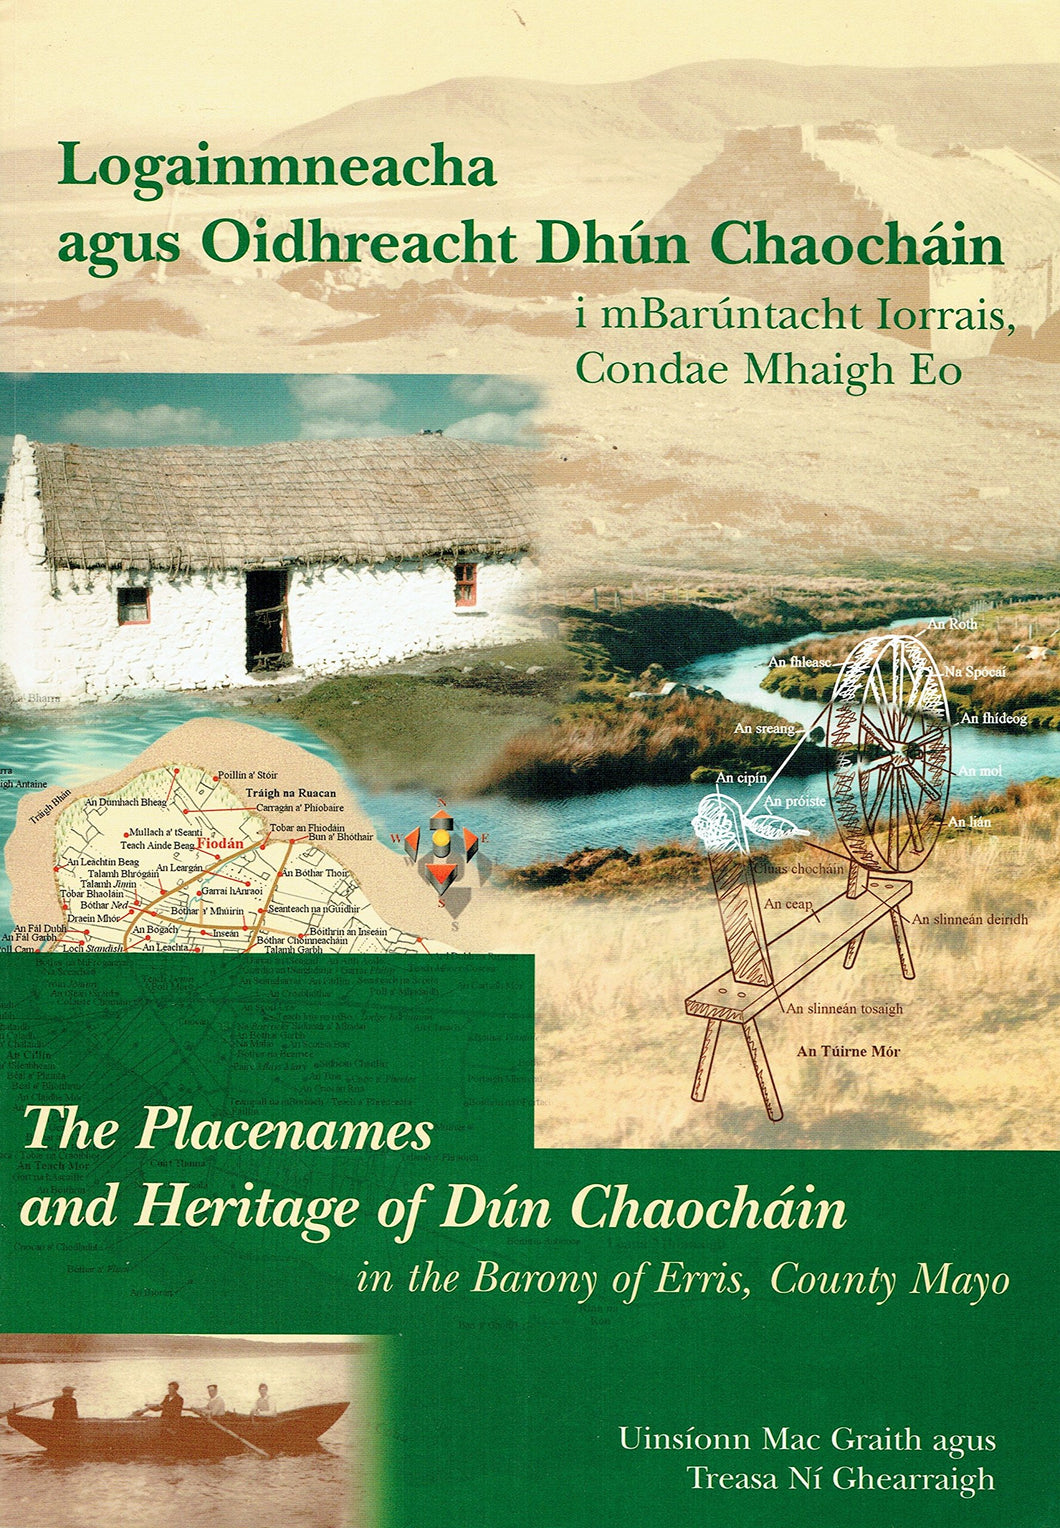 Logainmneacha Agus Oidhreacht Dhltn Chaochain I Mbaruntacht Iorrais,Co. Mhaigh Eo: The Placenames and Heritage of Dun Chaochain in the Barony of Erris,County Mayo